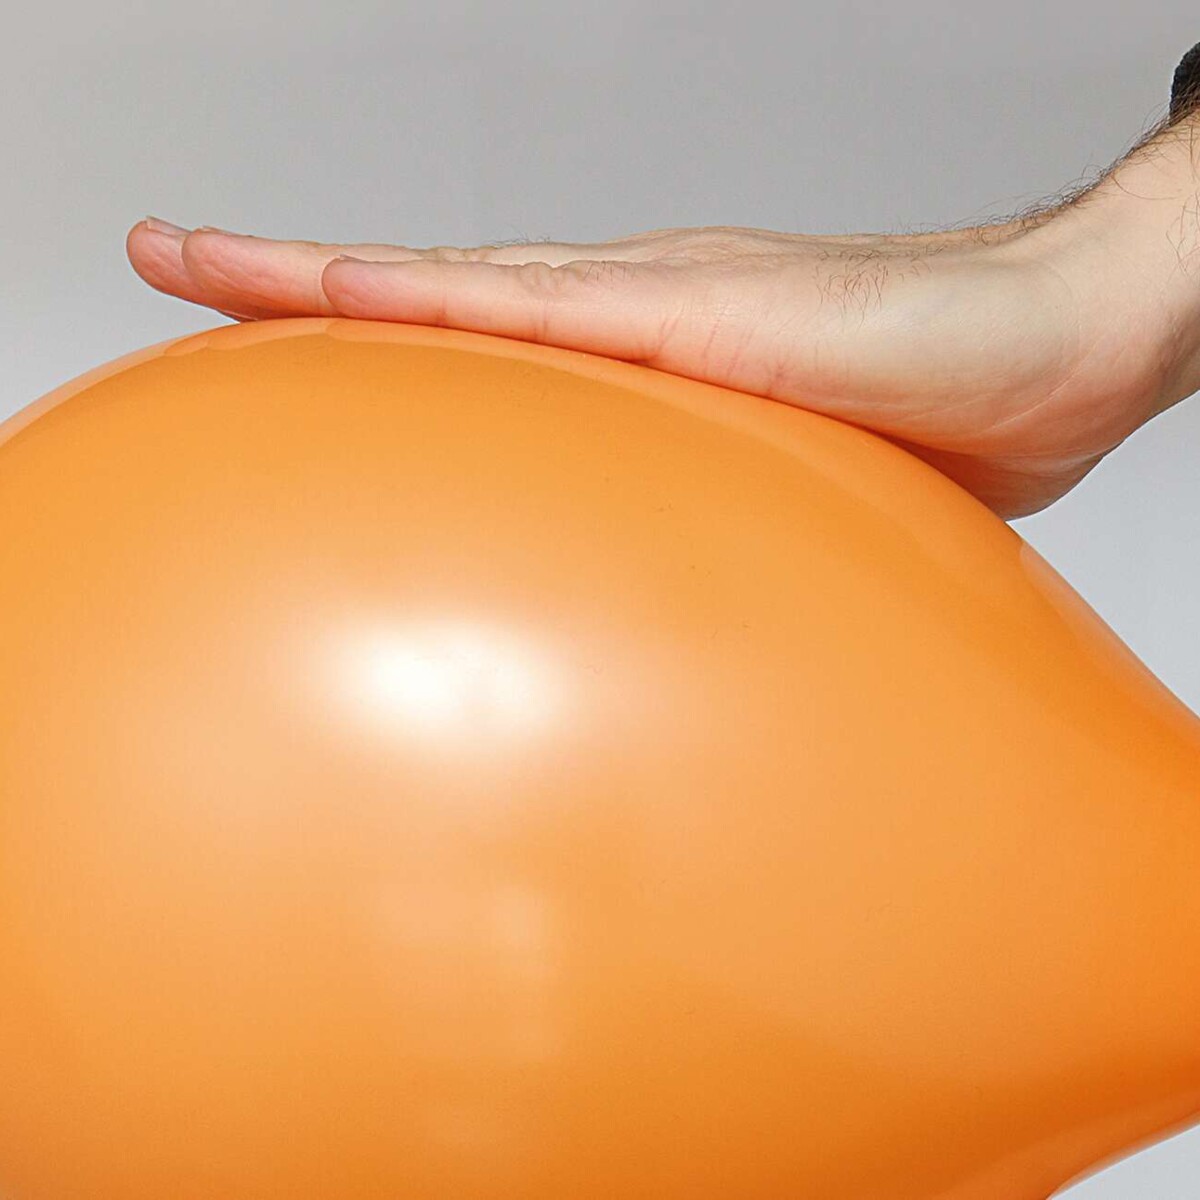 Relaunch vbg.de-Gefährdungsbeurteilung,  Symbolbild, mit der planen Handfläche leicht gedrückter aufgeblasener Luftballon